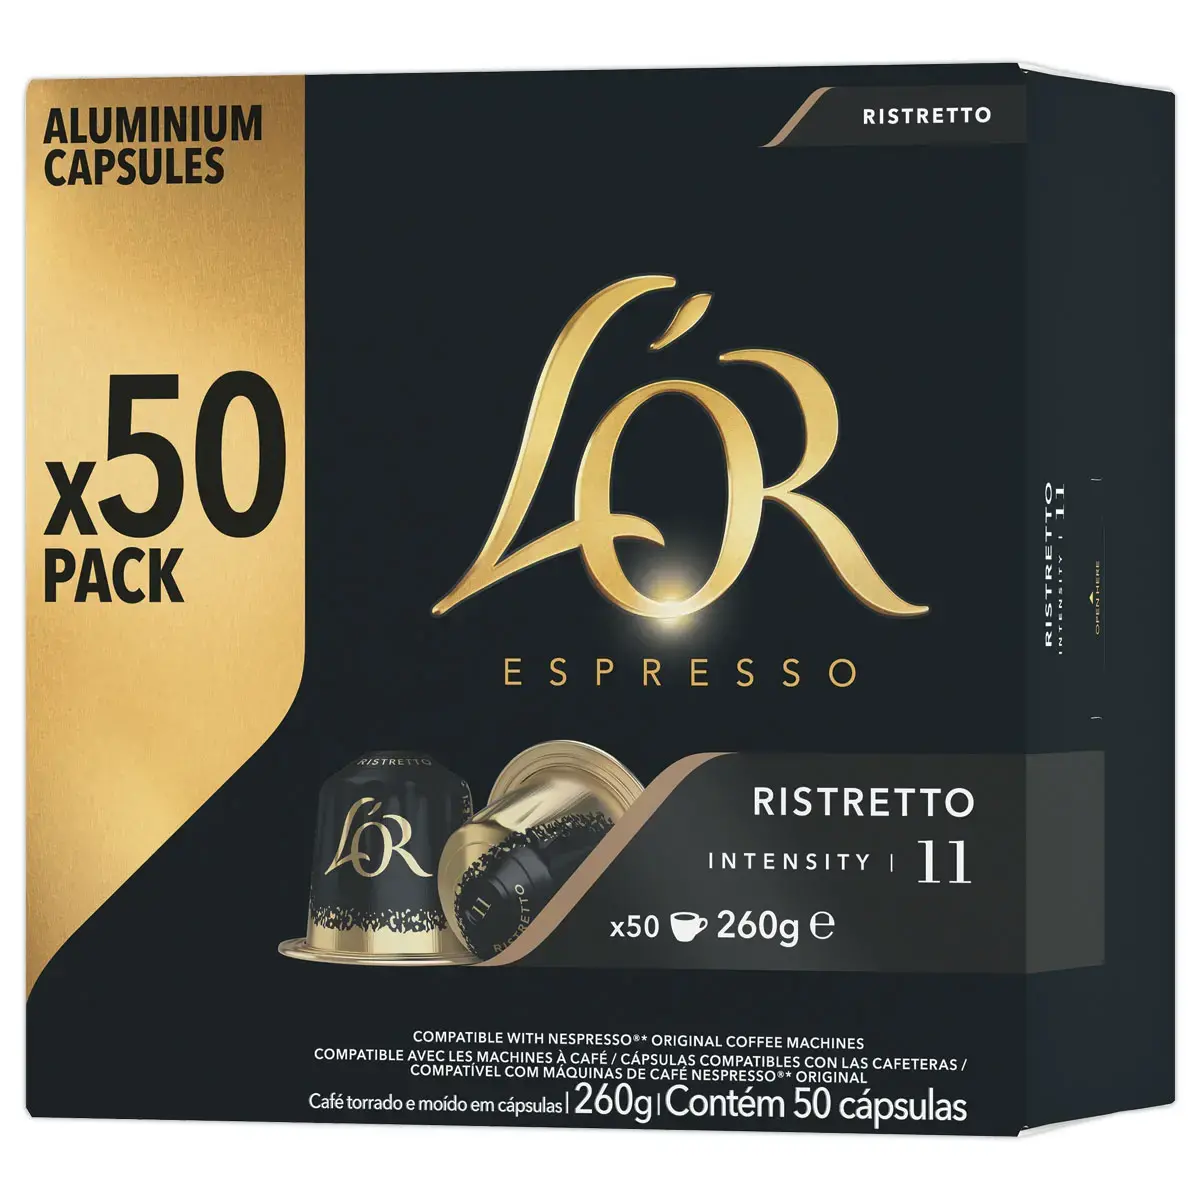 Boite de 50 capsules de café L'OR Espresso Ristretto photo du produit